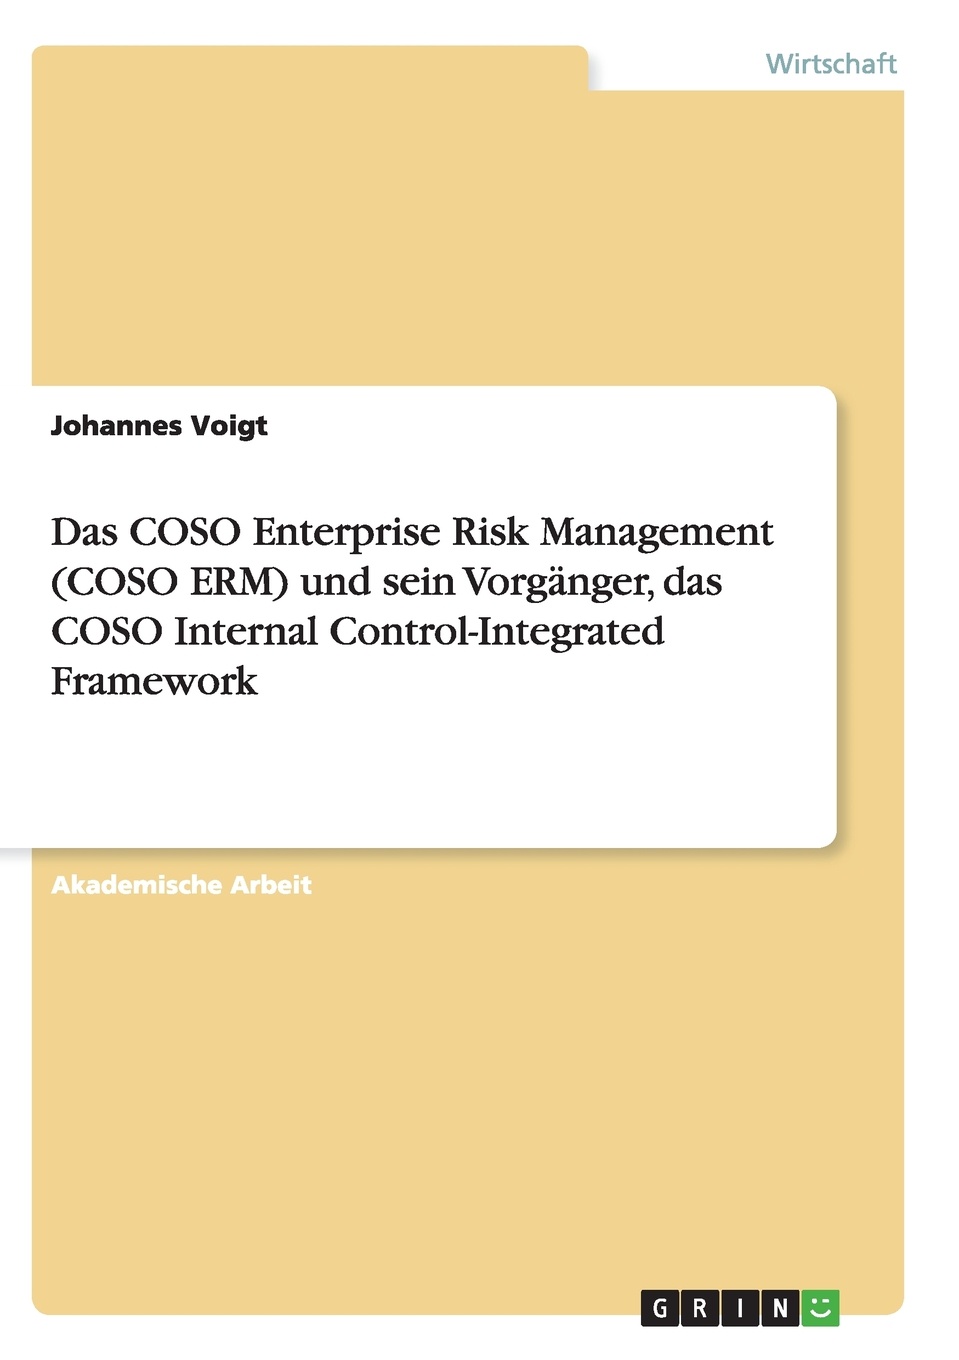 Das COSO Enterprise Risk Management (COSO ERM) und sein Vorganger, das COSO Internal Control-Integrated Framework